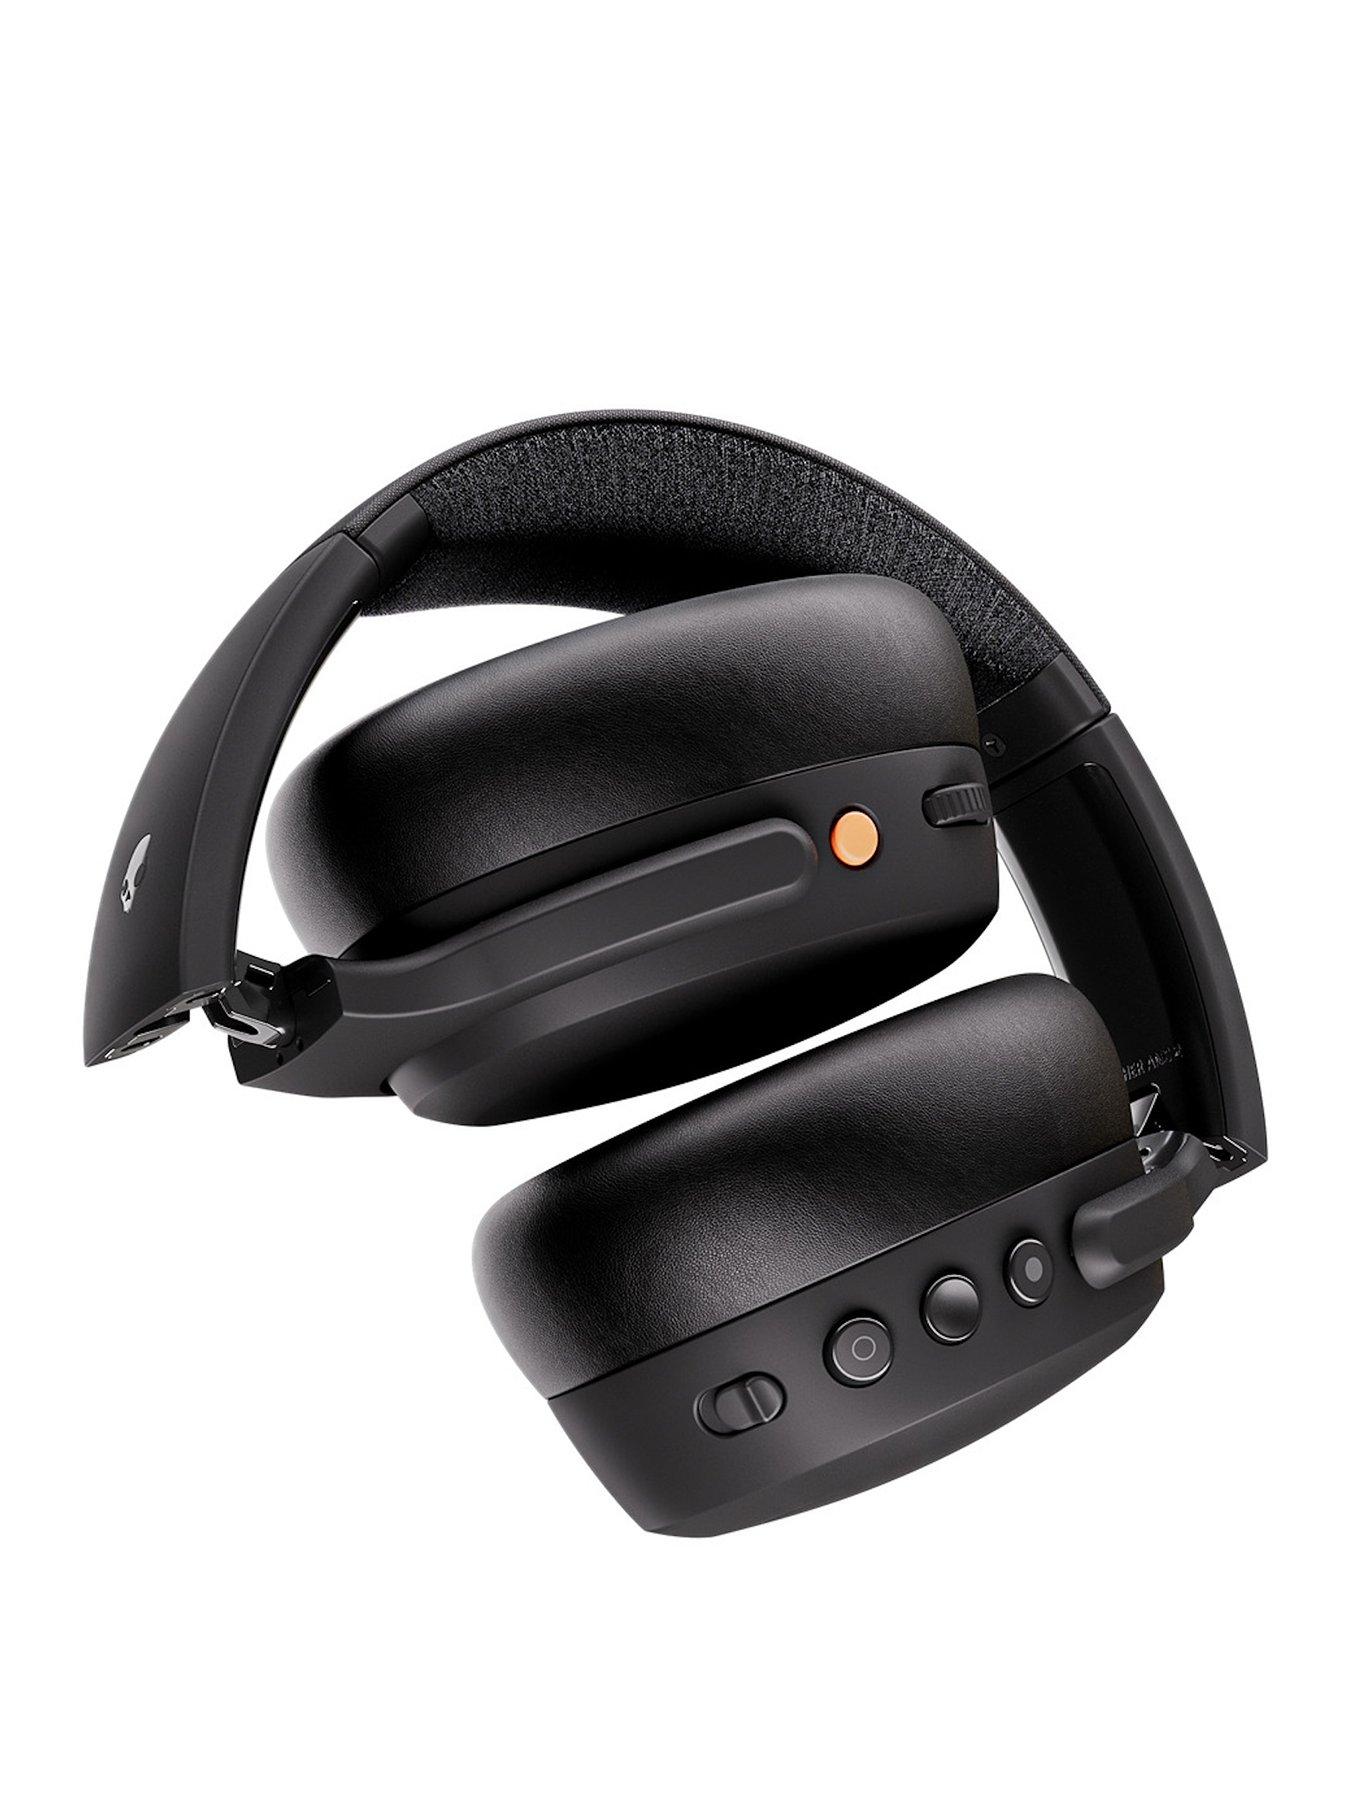 Skullcandy Crusher ANC 2 Wireless Over-ear Headphones